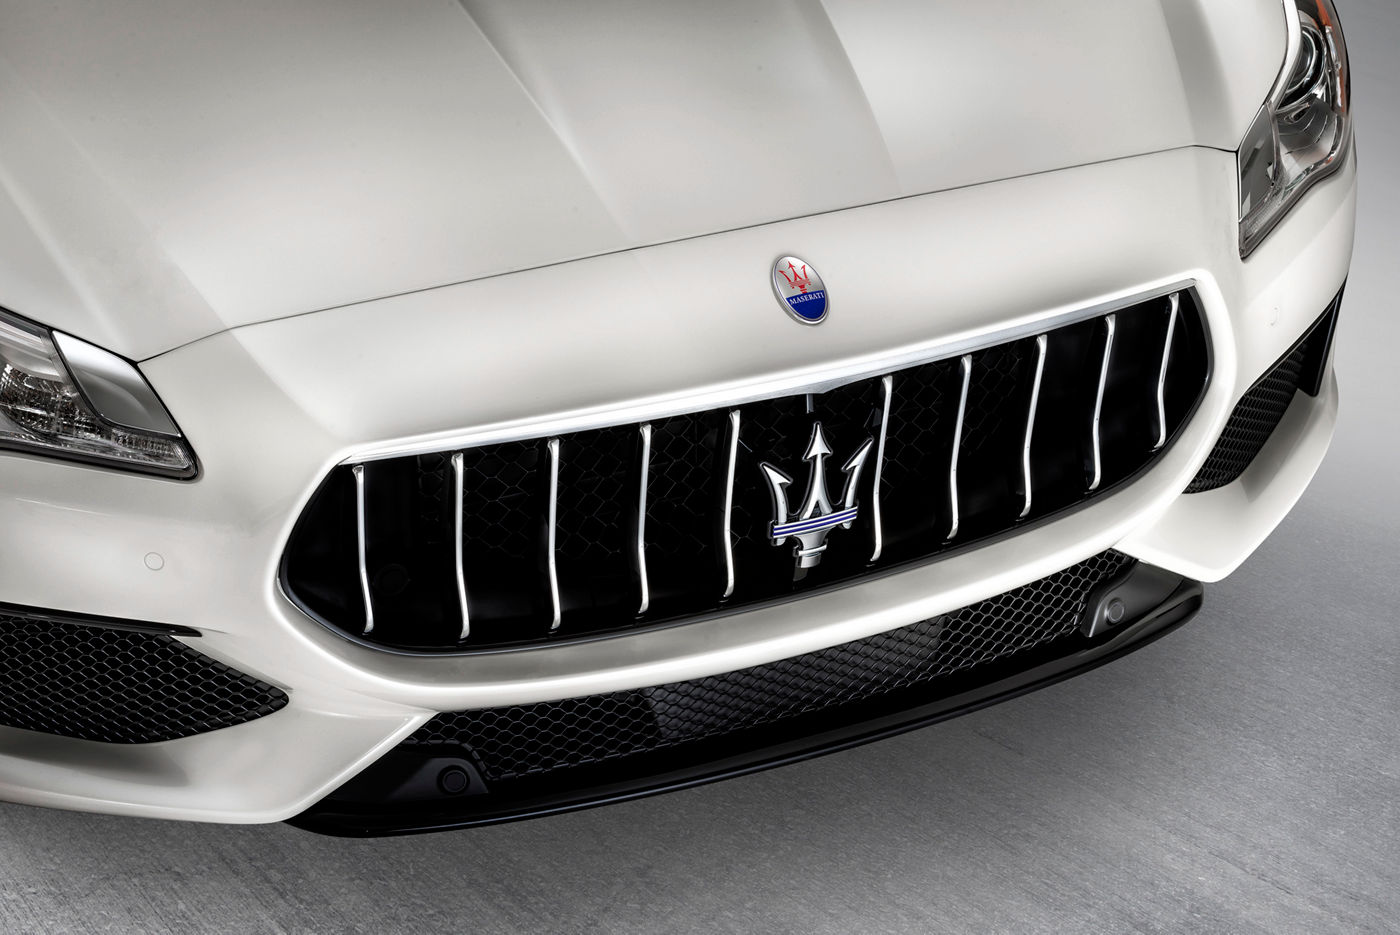 Parachoques del sedán Maserati Quattroporte GranSport